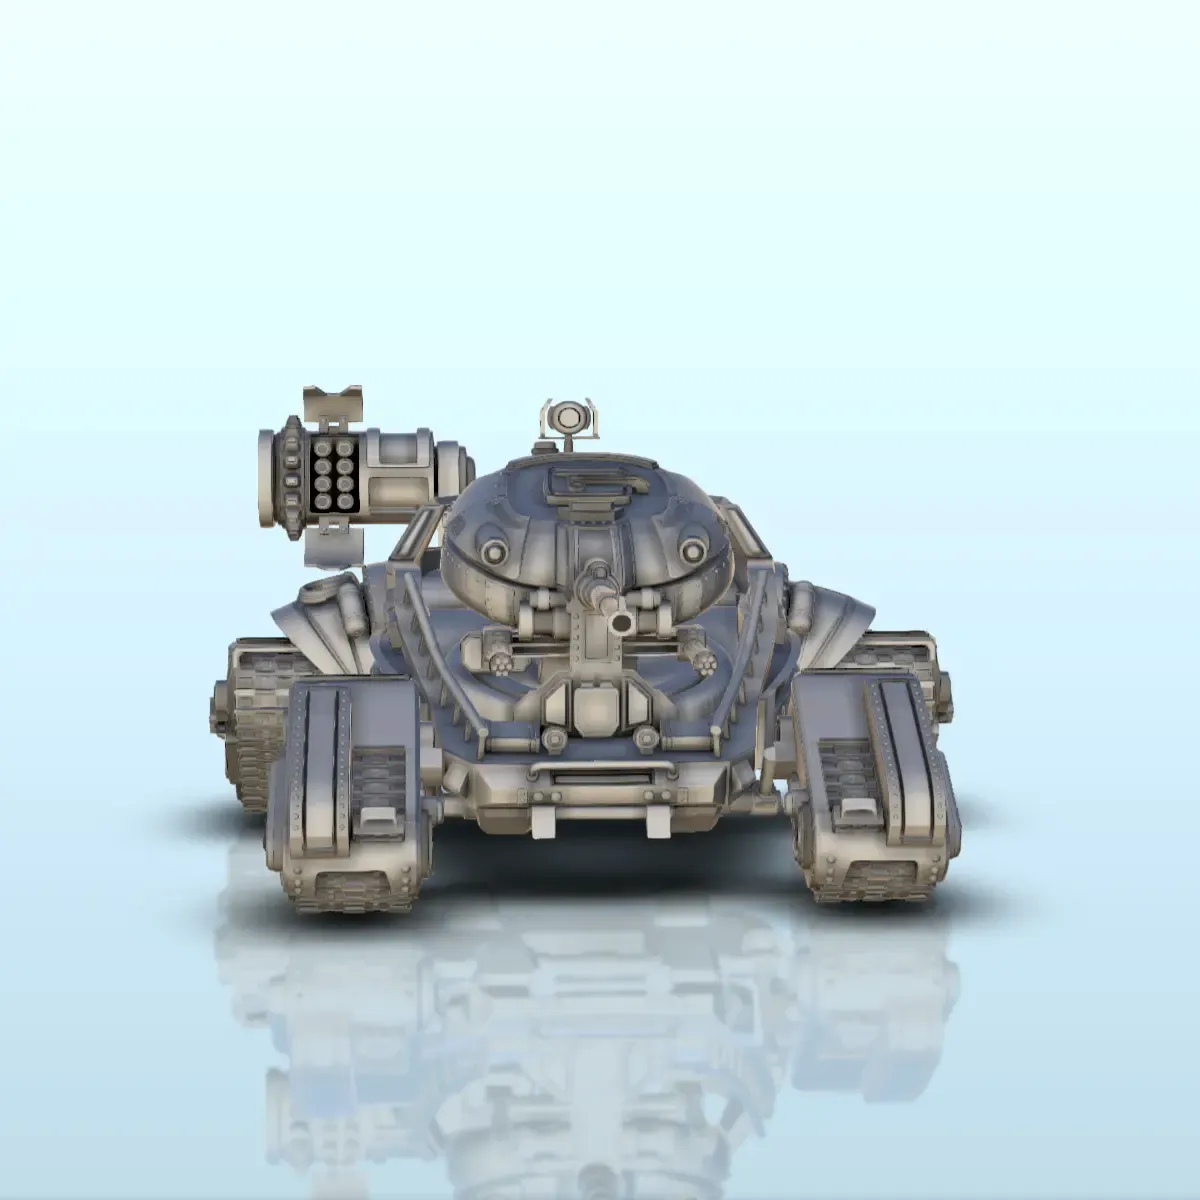 Sci-Fi tank with turret and quadri-trucks advanced system